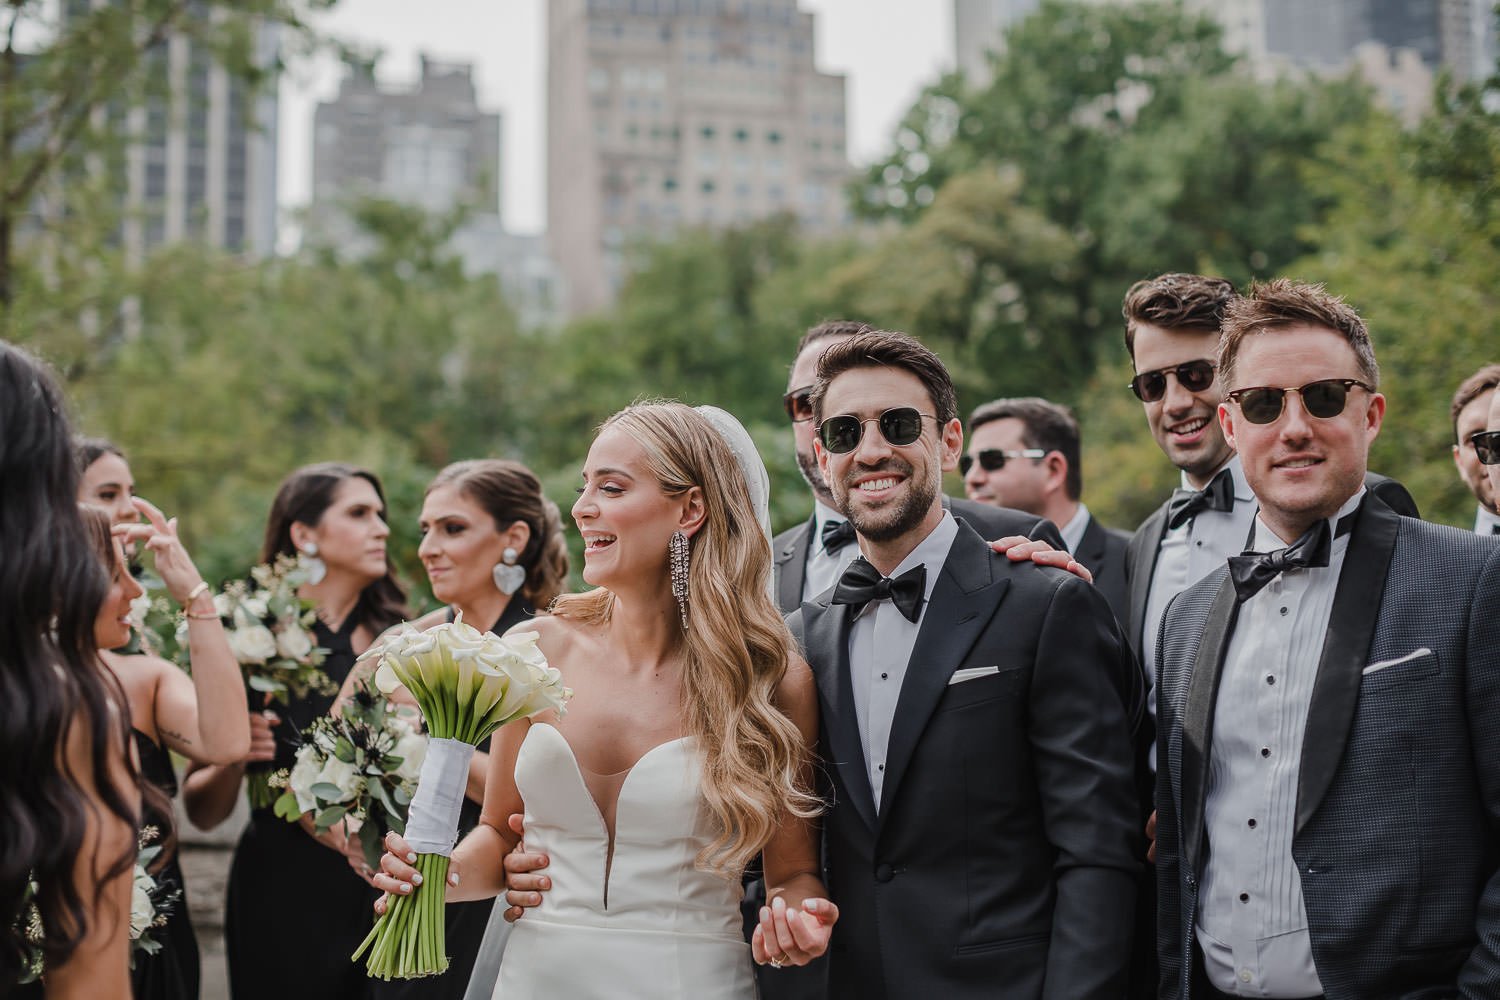 Wedding Photos In Central Park